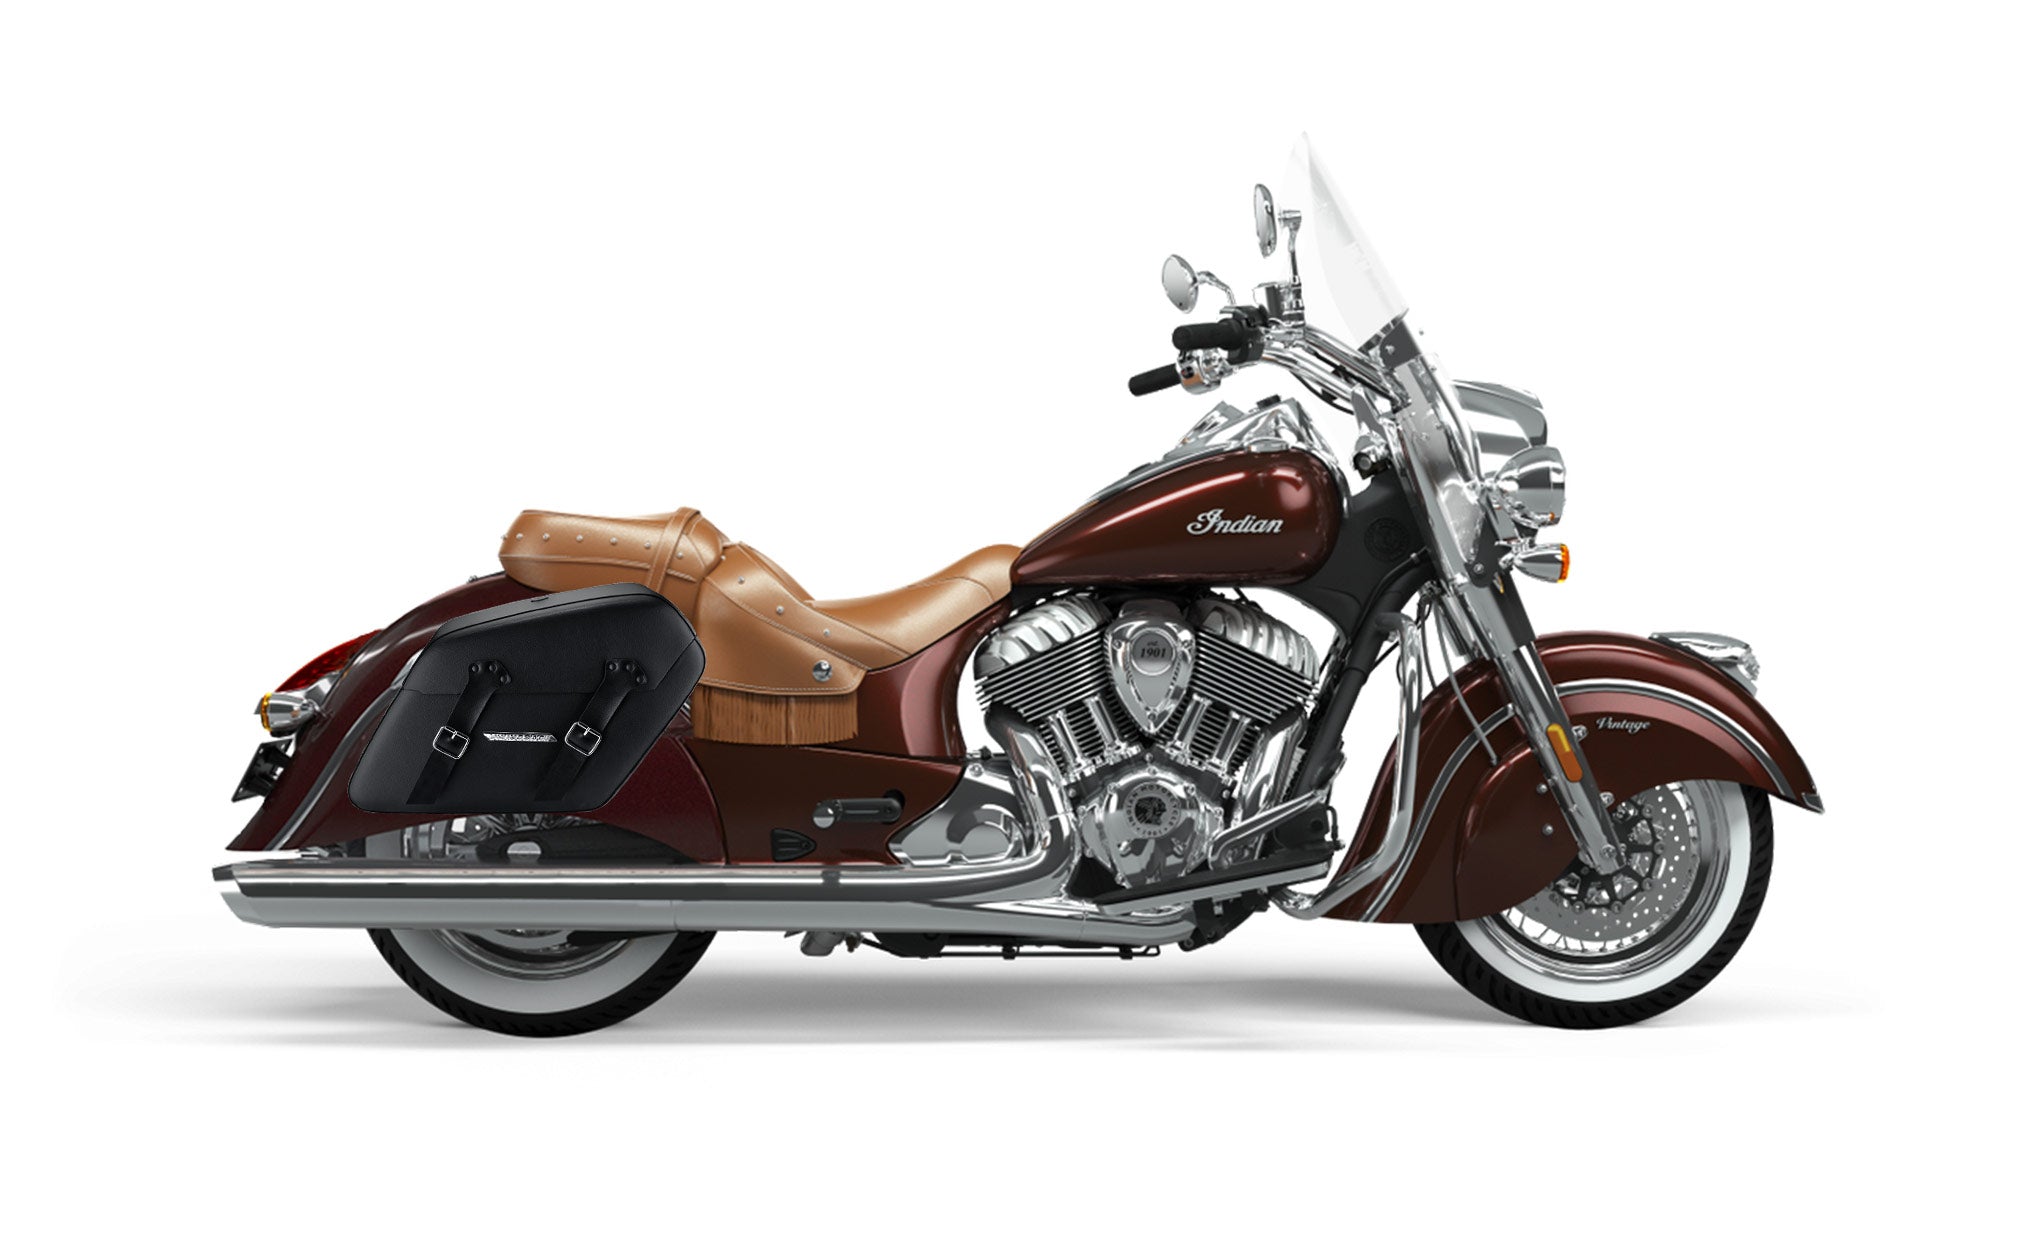 Viking Baldur Extra Large Indian Vintage Leather Wrapped Motorcycle Hard Saddlebags on Bike Photo @expand